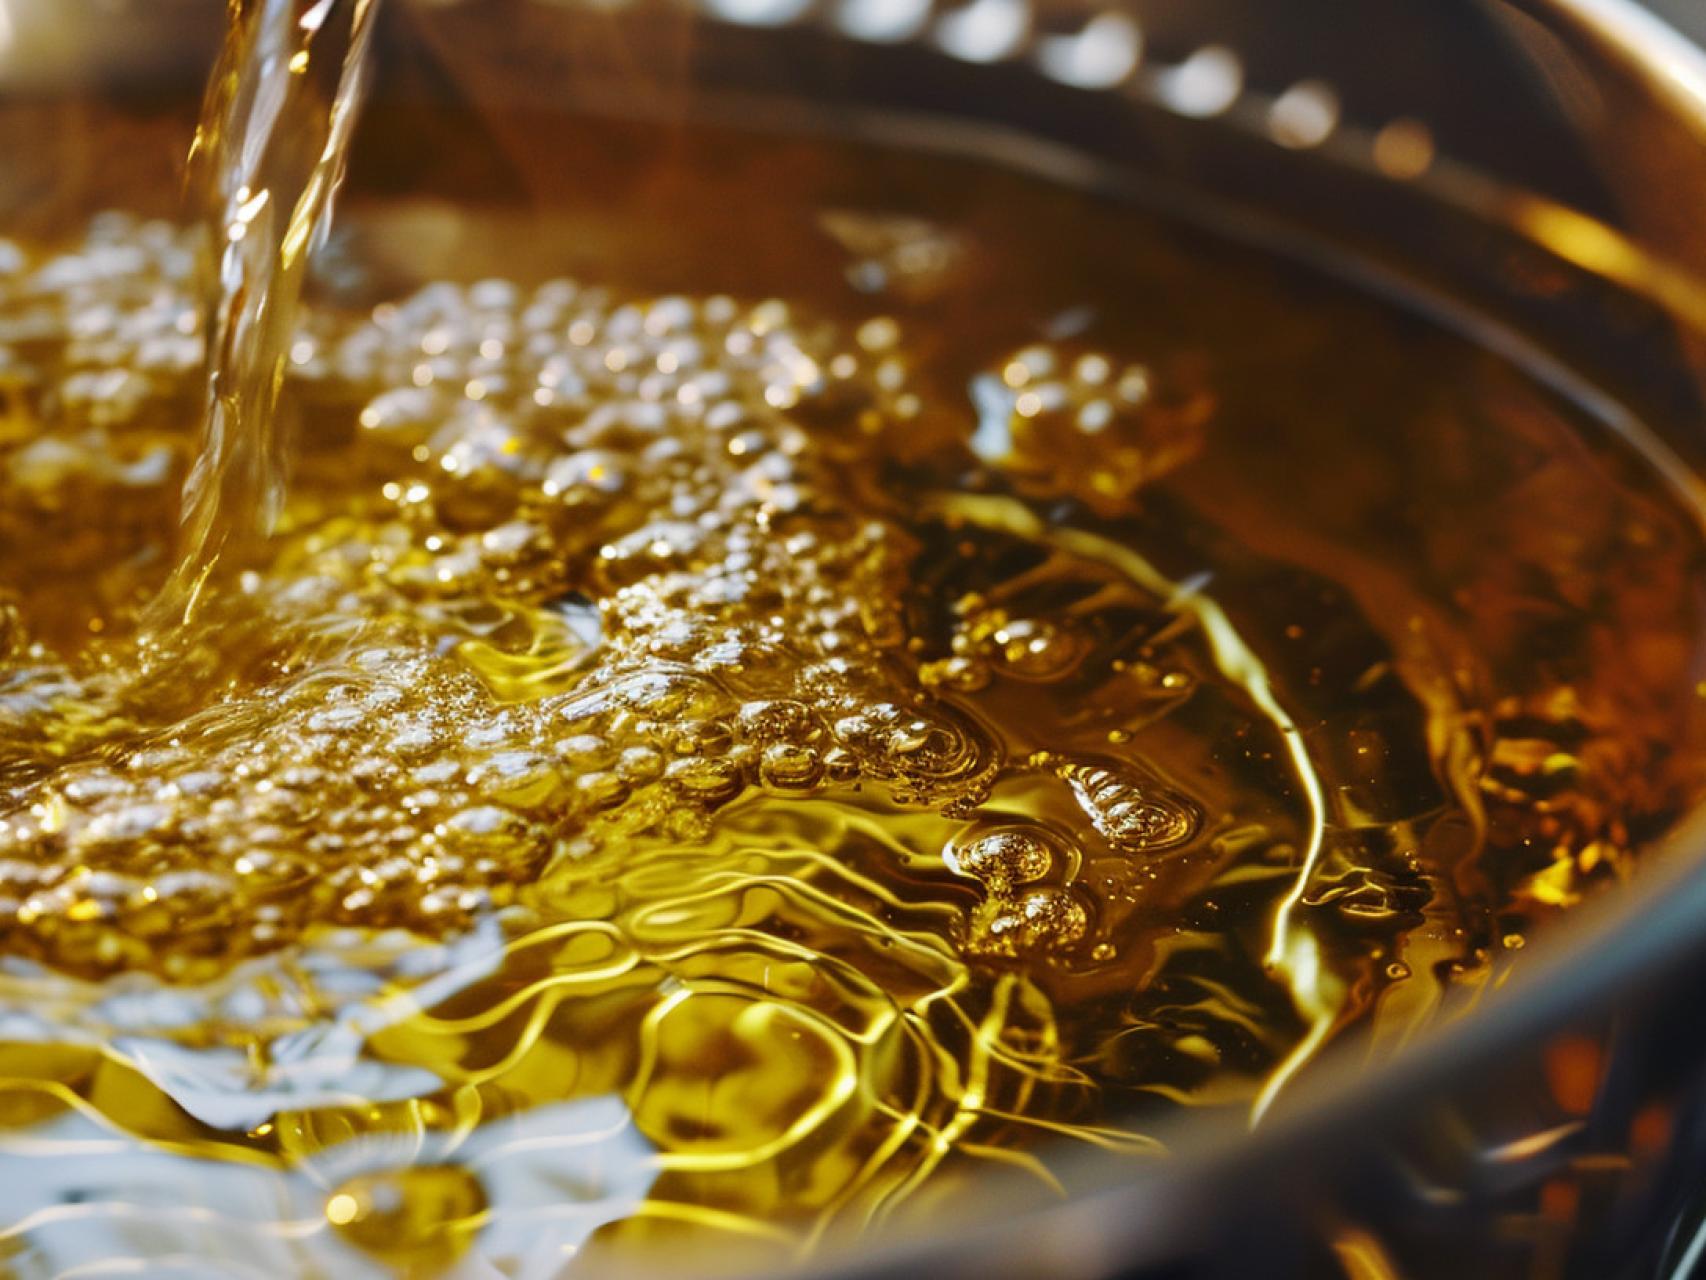 La cantidad de aceite de oliva que debes tomar según los expertos